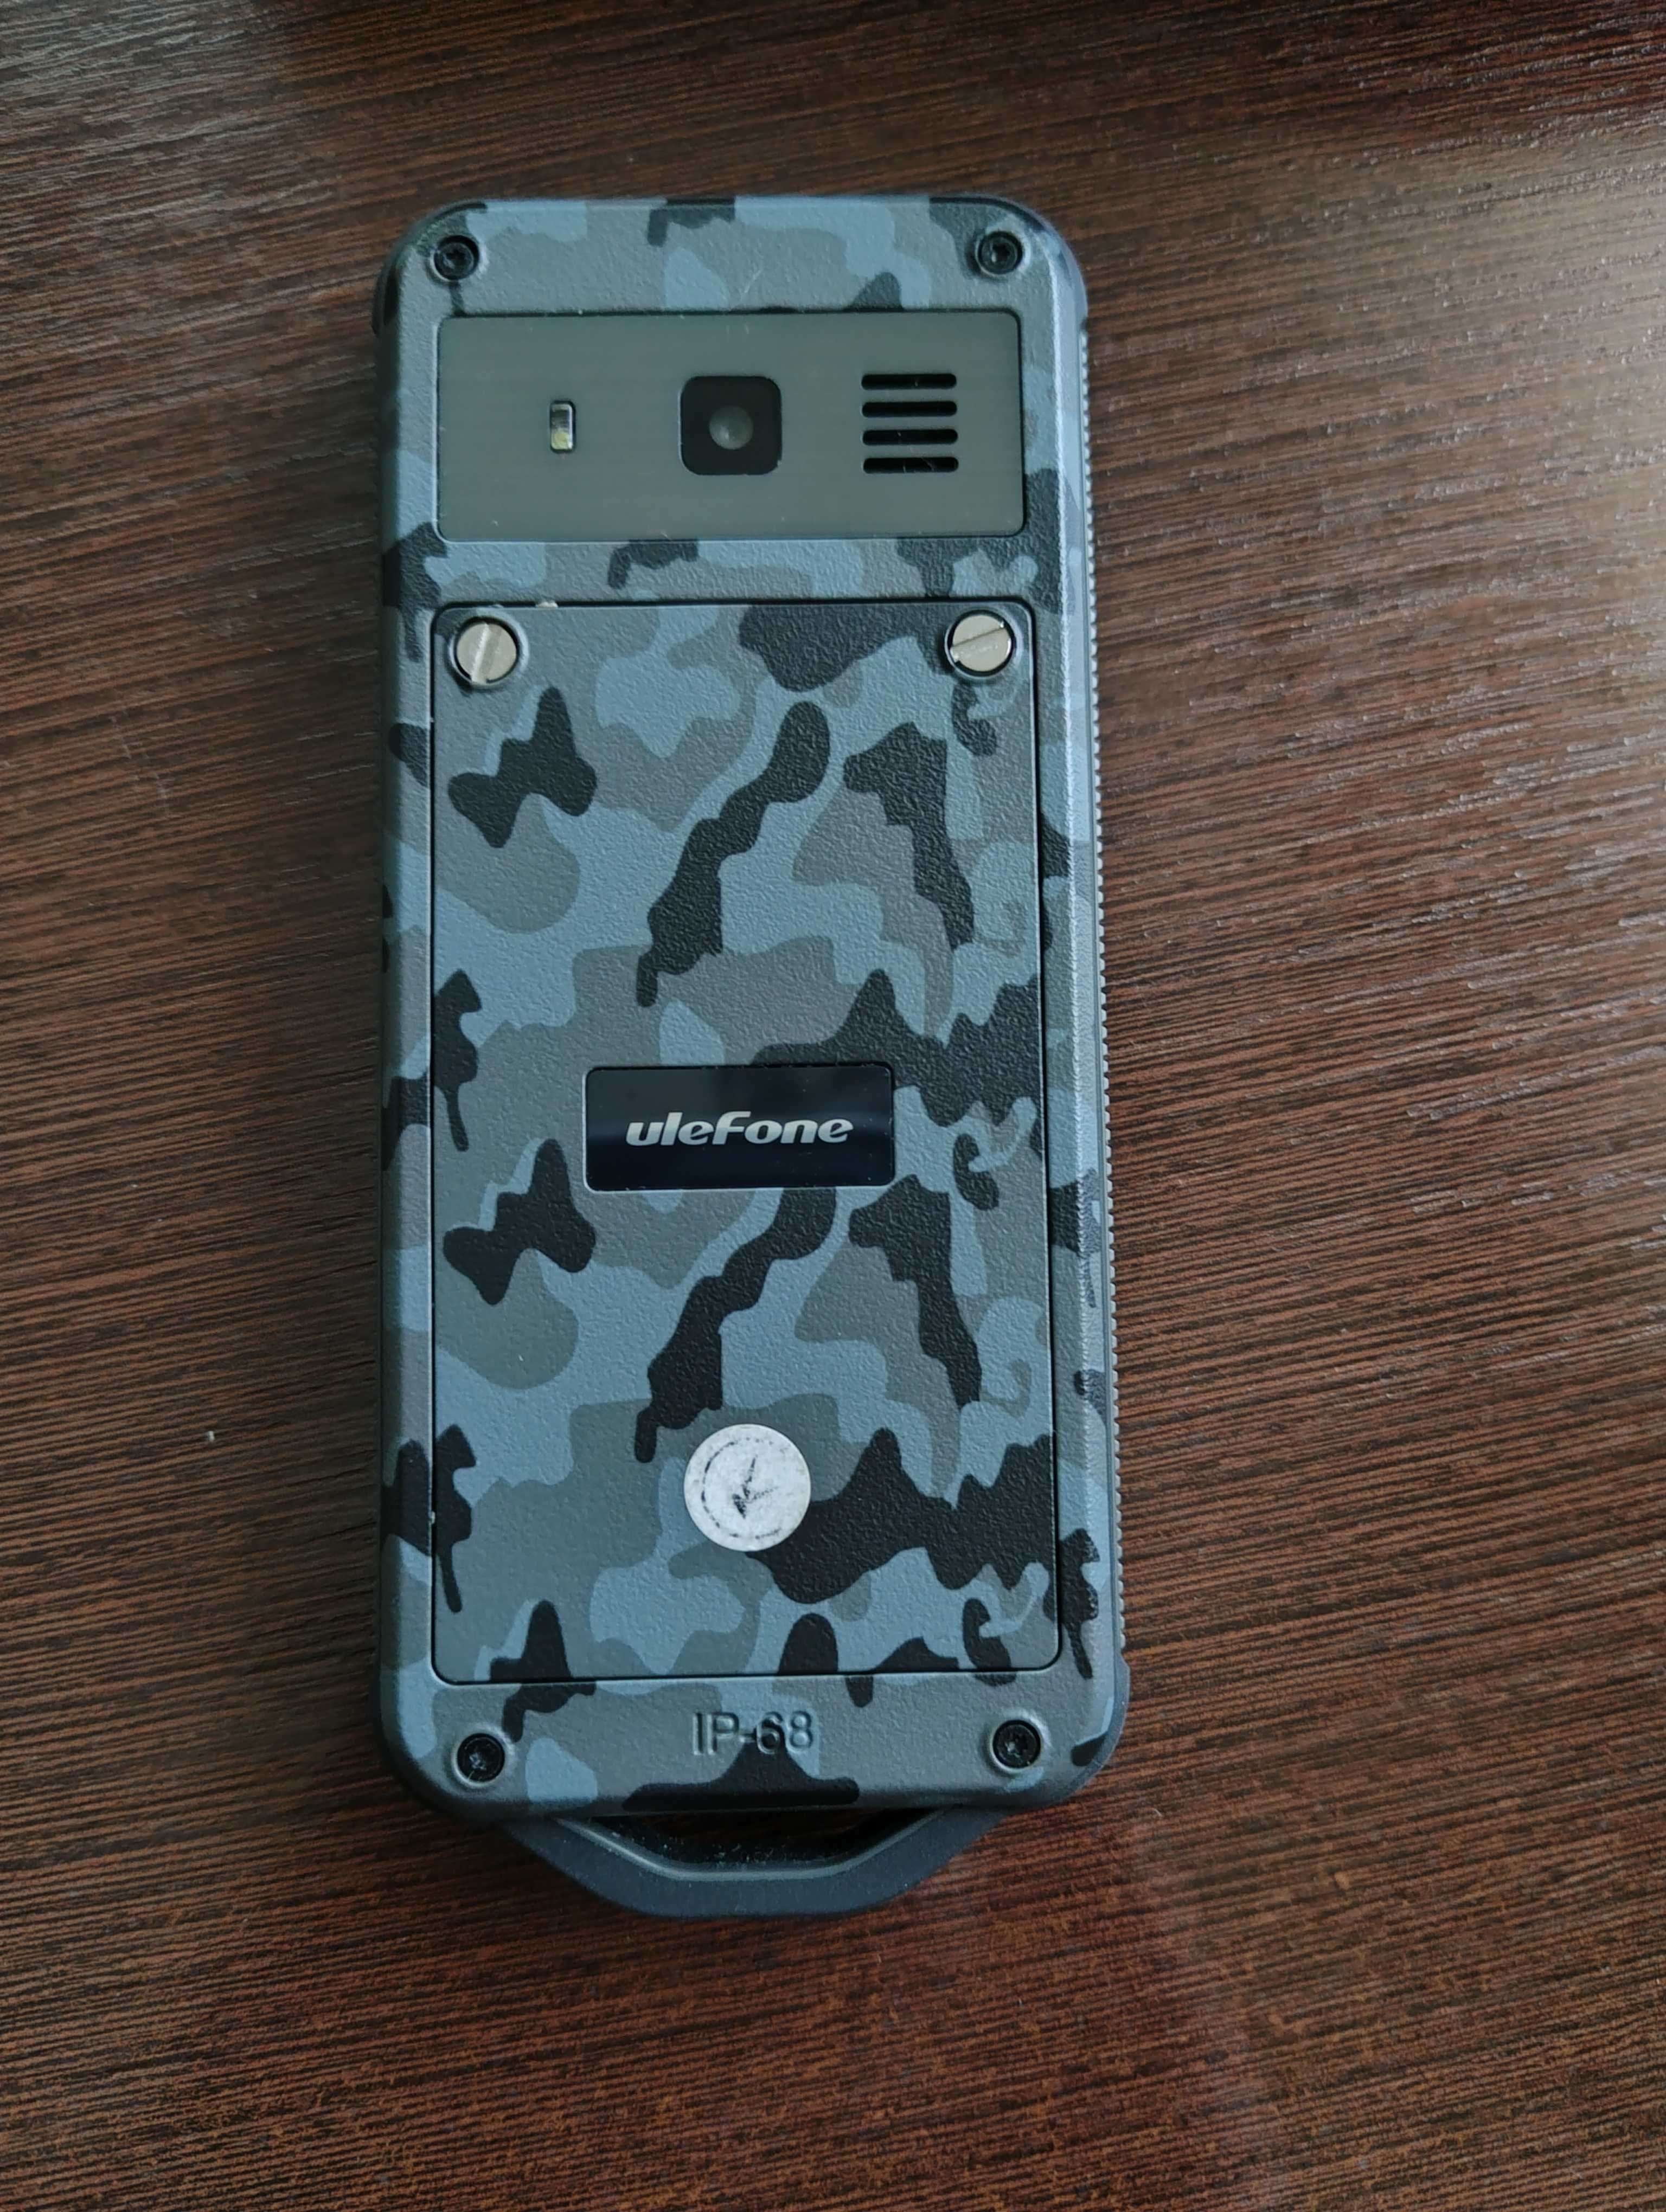 Захищений телефон Ulefone Armor mini 2 стан нового, повний комплект